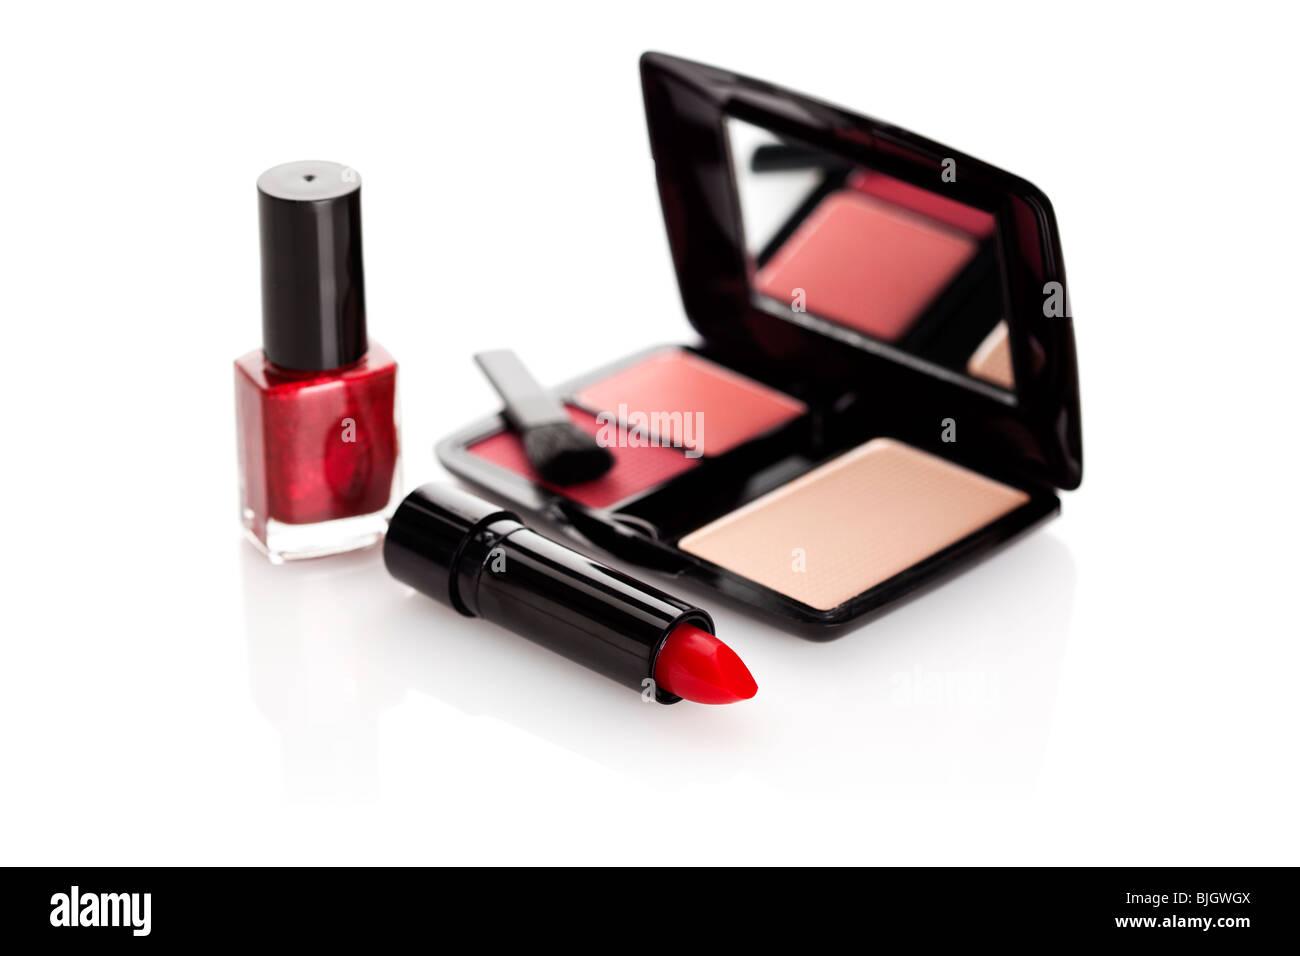 Lápiz labial rojo, laca de uñas y caso con rouge y maquillaje sobre fondo blanco. Foto de stock